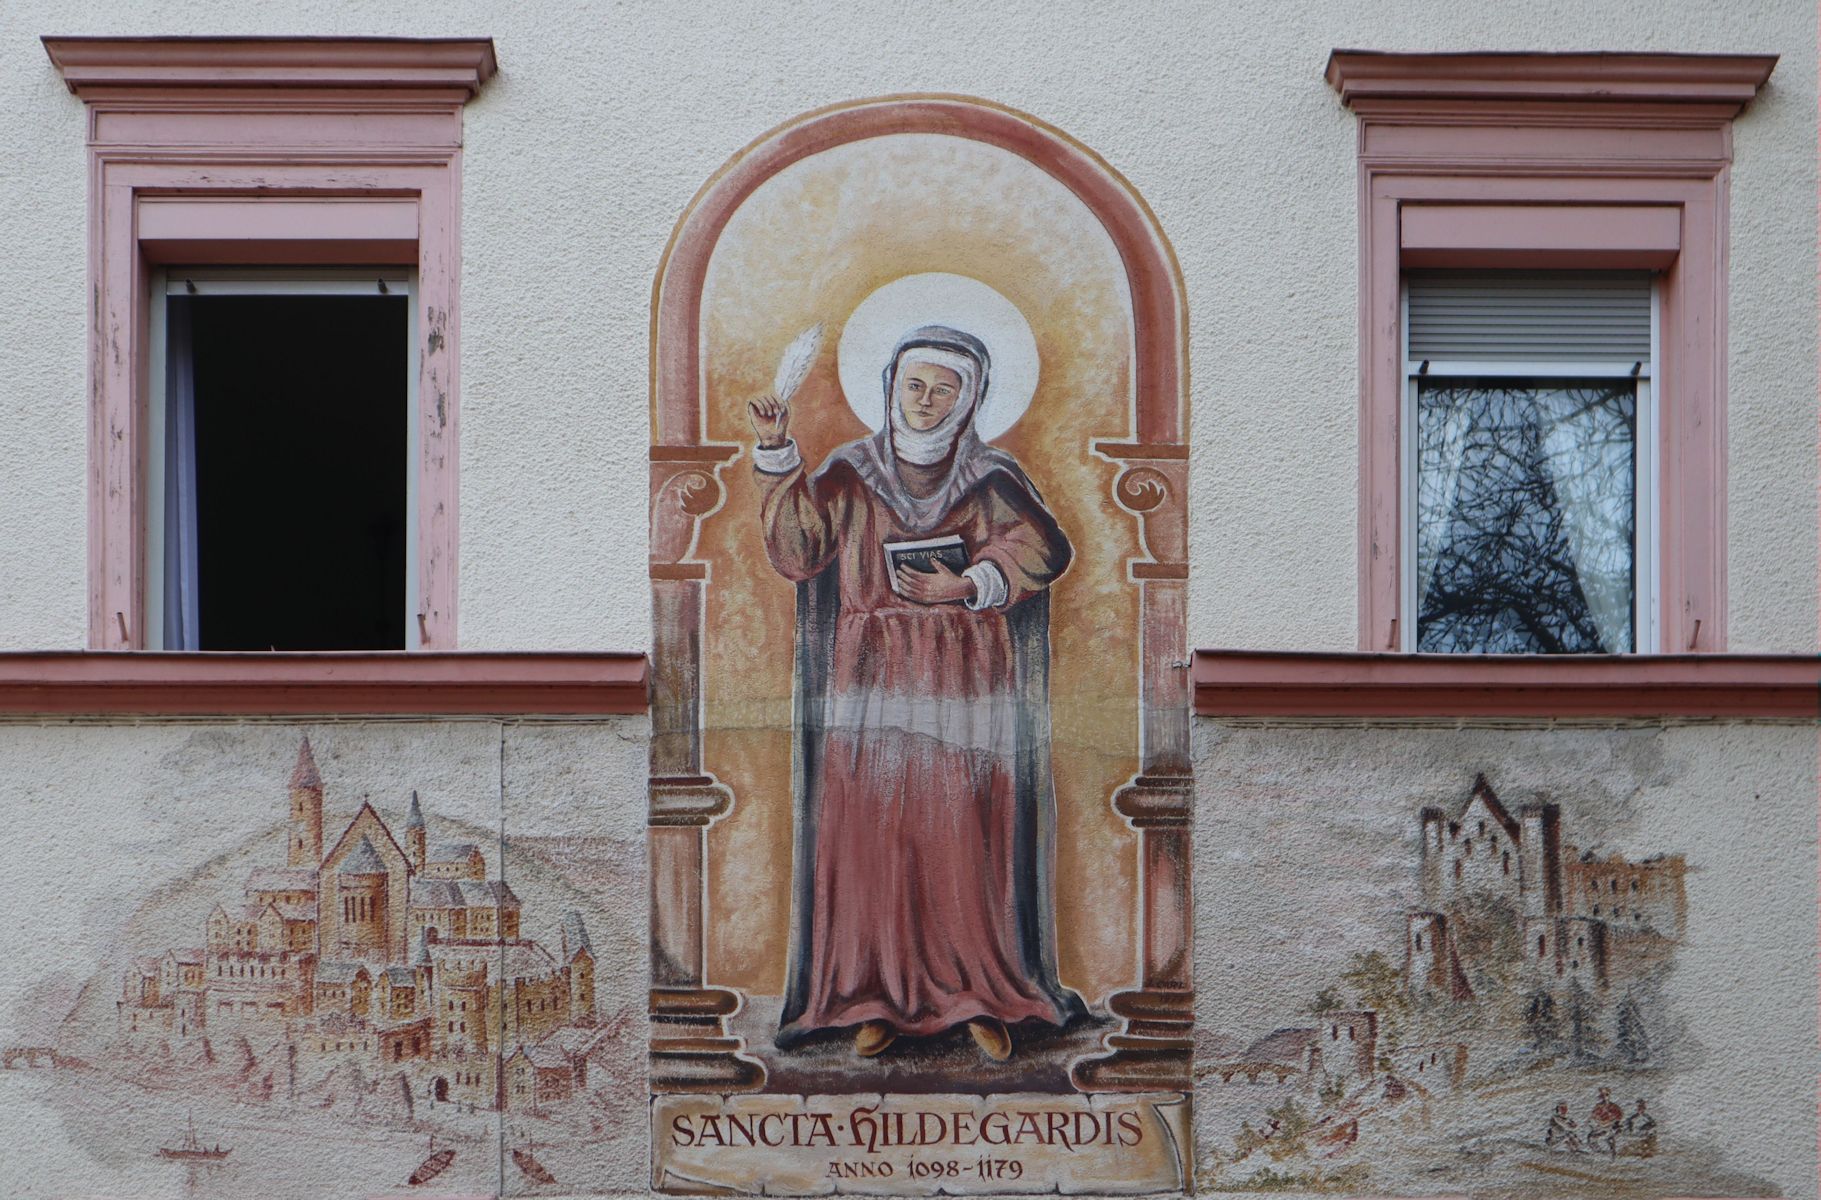 Wandmalerei: Hildegard mit ihren Klöstern Rupertusberg (links) und Eibingen (rechts), an einem Haus neben der Kirche St. Martin in Bingen